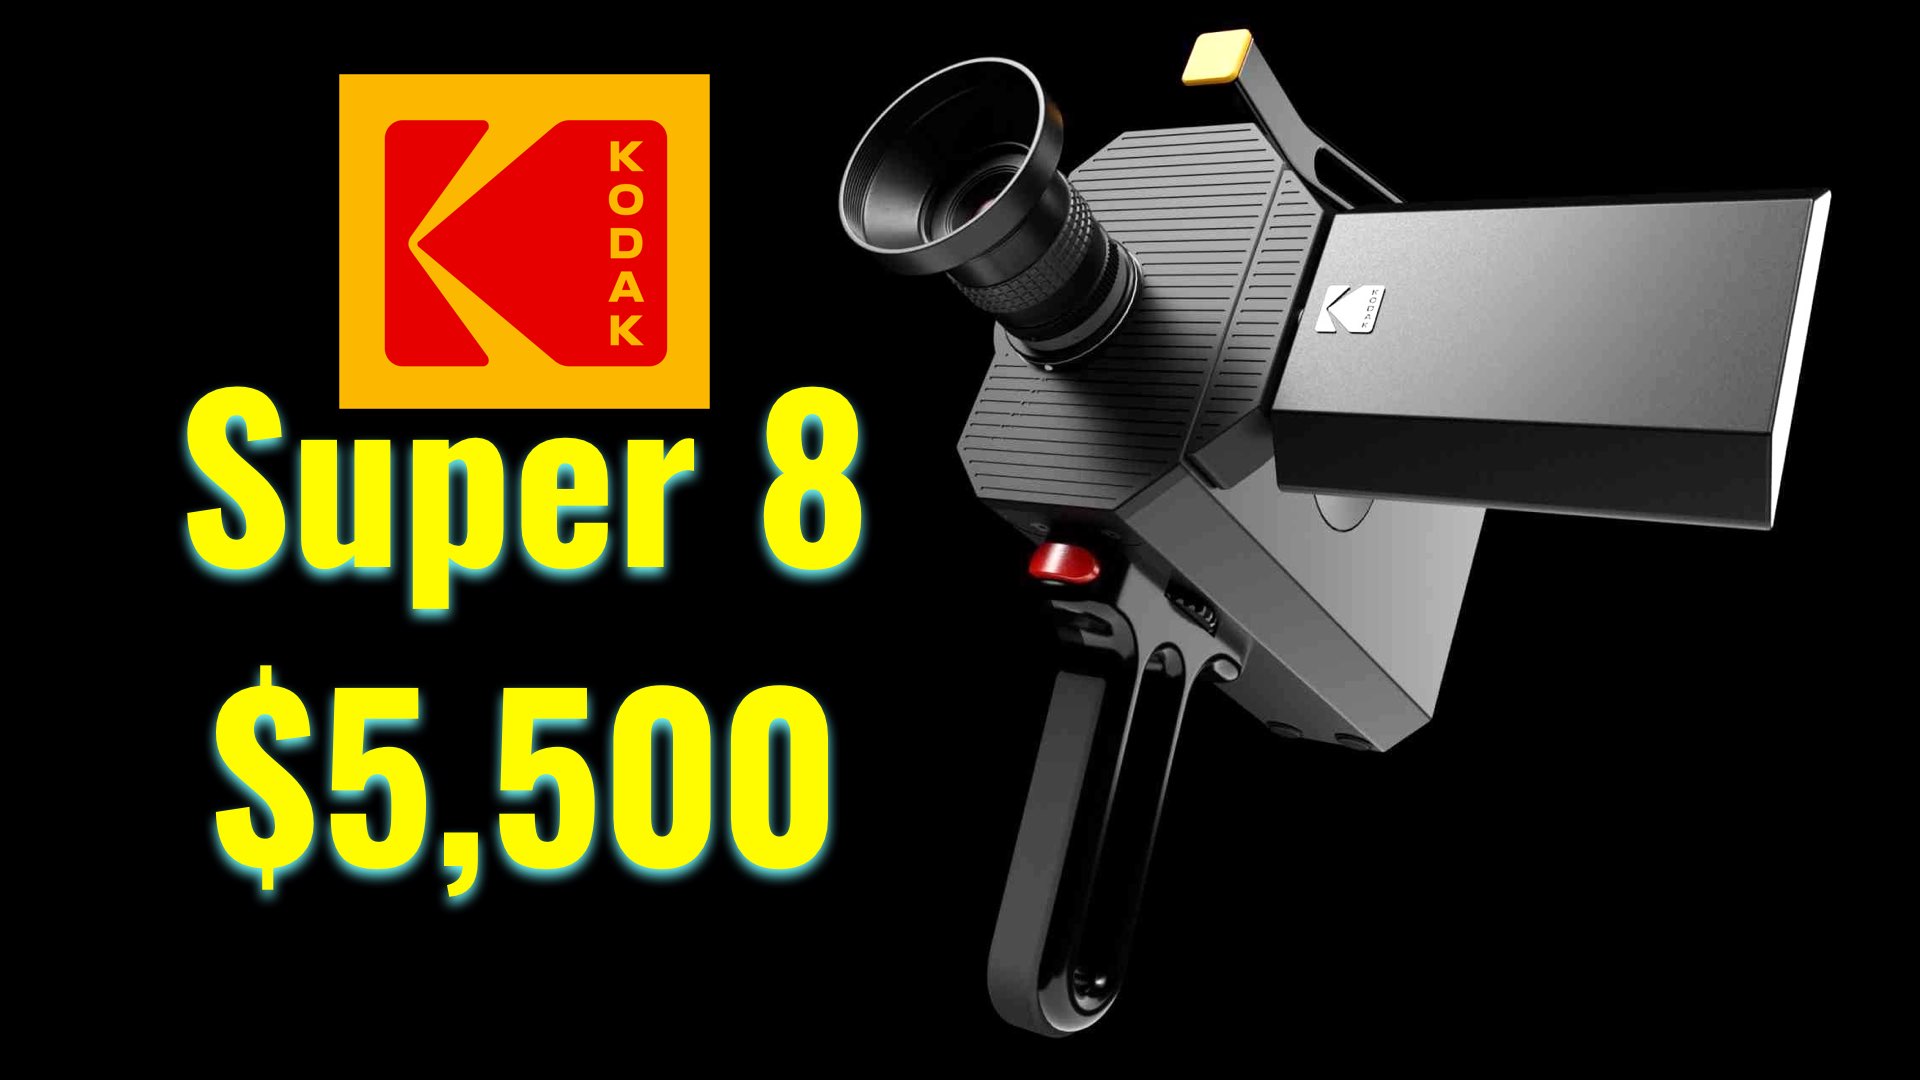 Kodak Announces a New Super 8 Camera